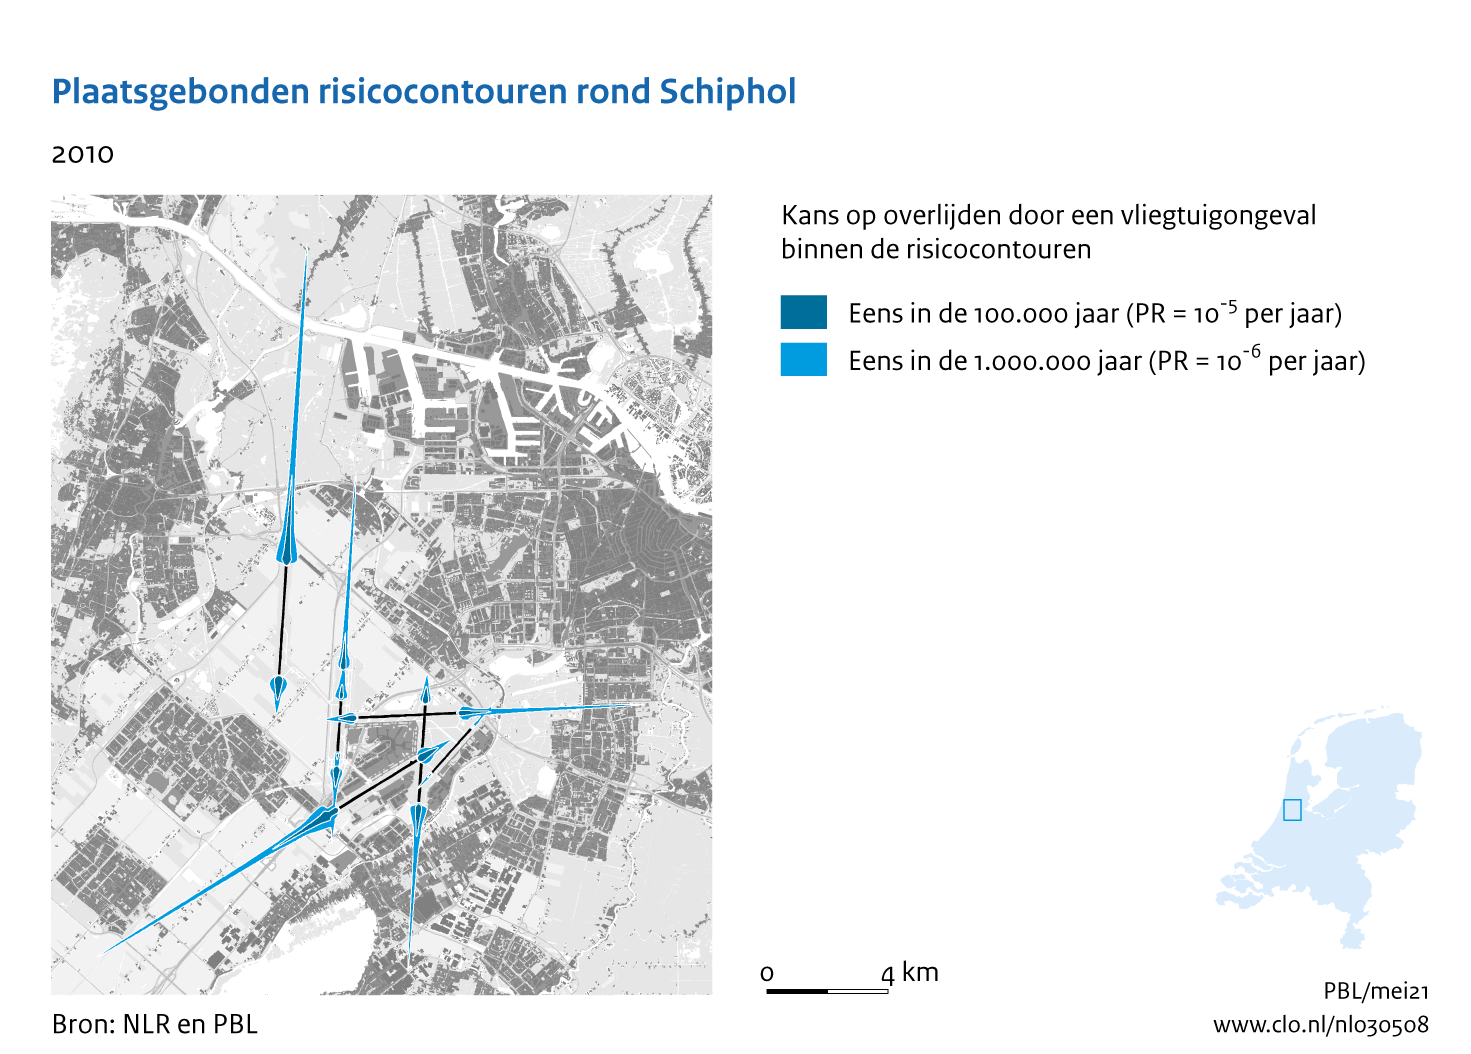 Figuur Plaatsgebonden risicocontouren rond Schiphol, 2010. In de rest van de tekst wordt deze figuur uitgebreider uitgelegd.